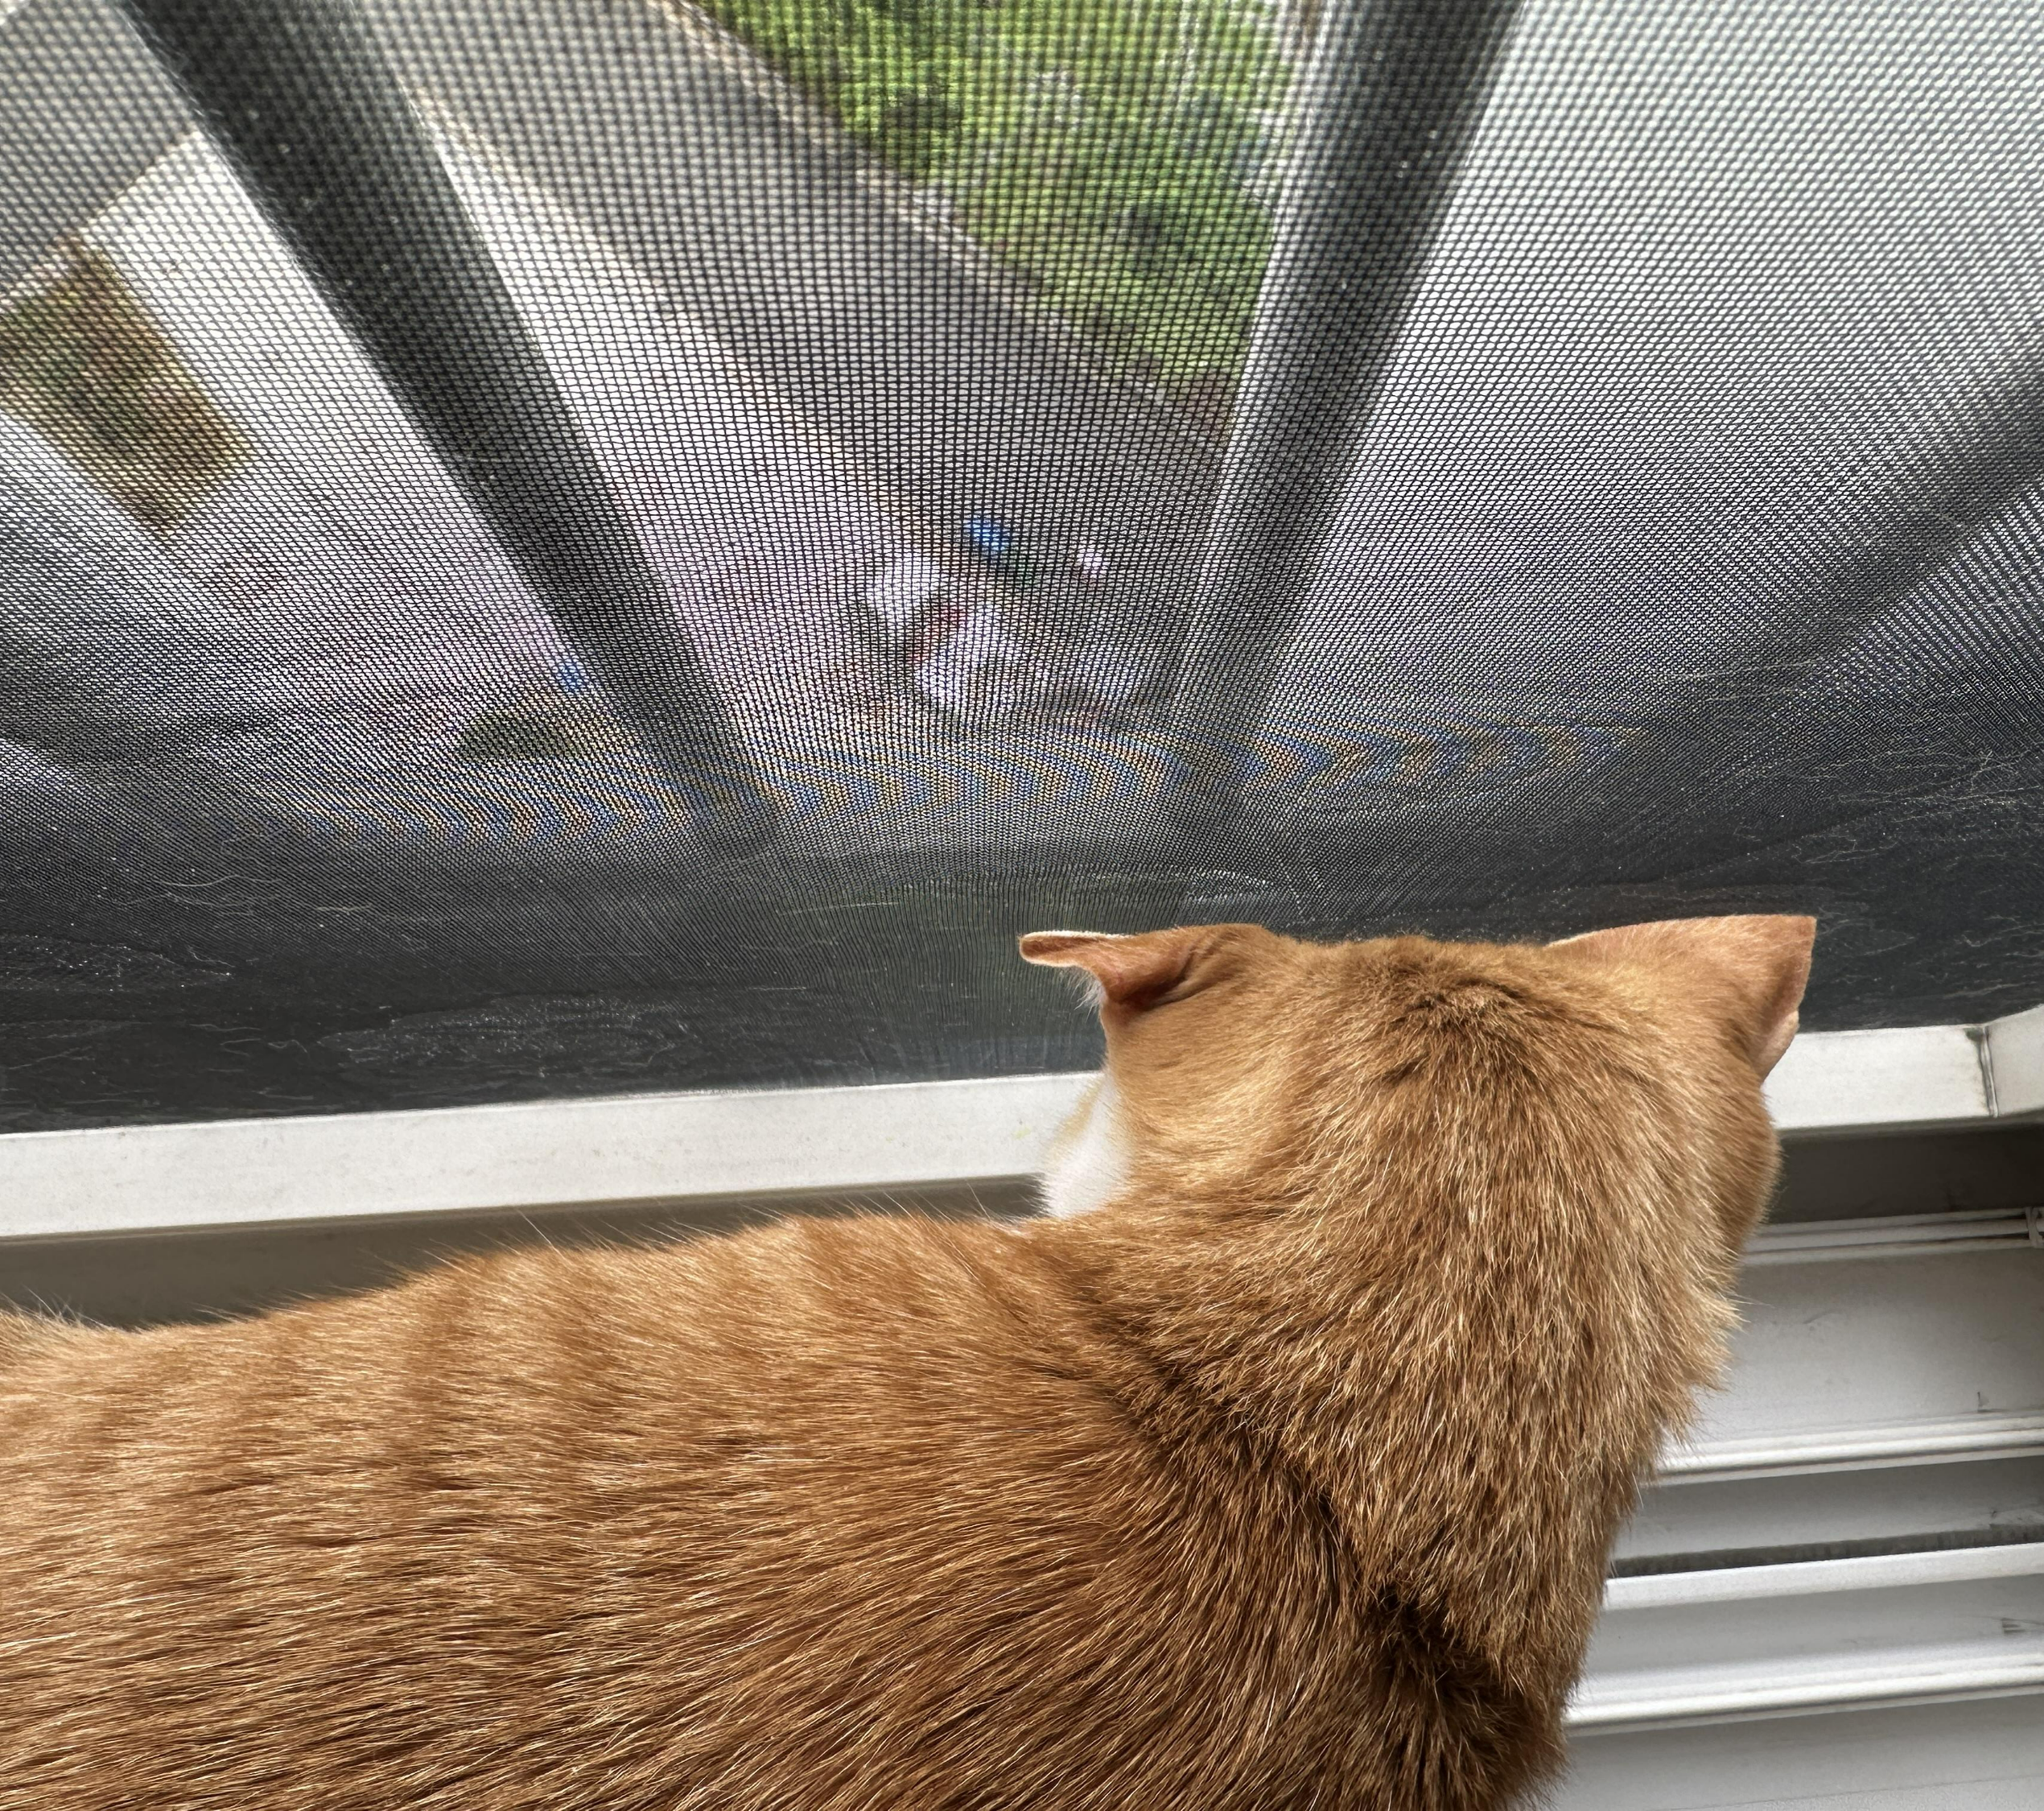 안전방충망에 머리 꼭 대고 창밖 구경하고 있어서 귀가 접힌 고양이들